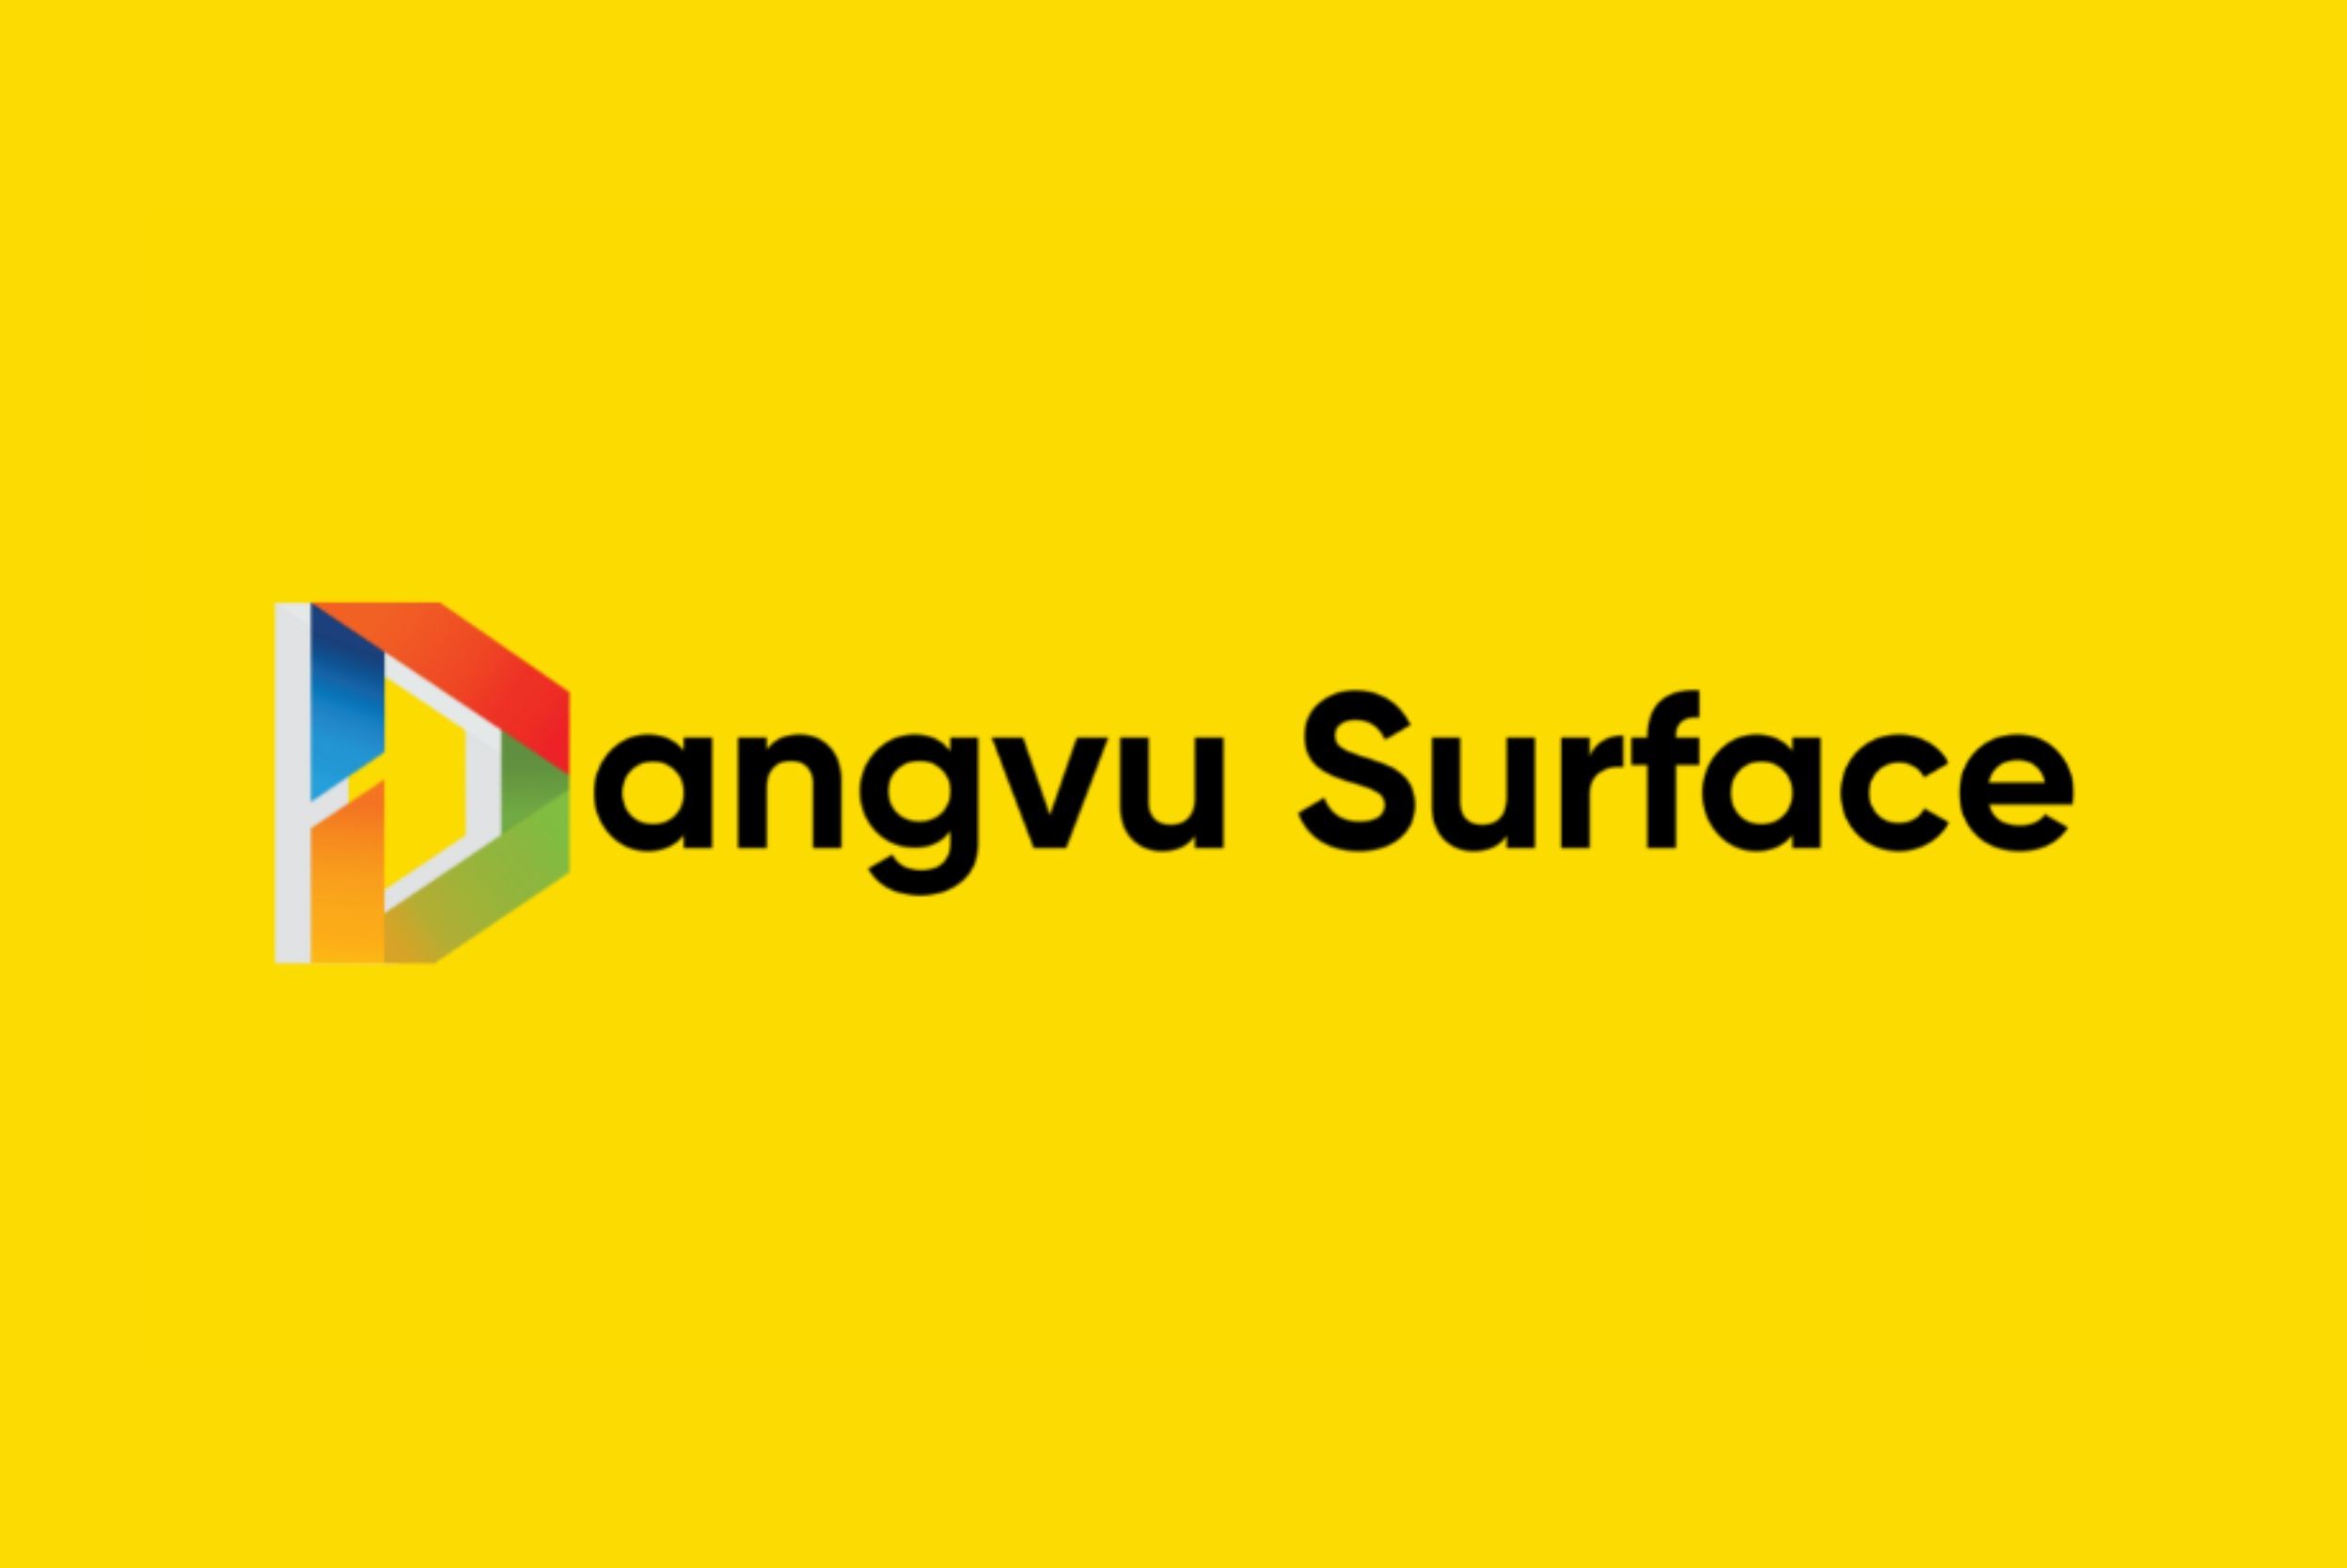 dang-vu-surface-logo.jpg